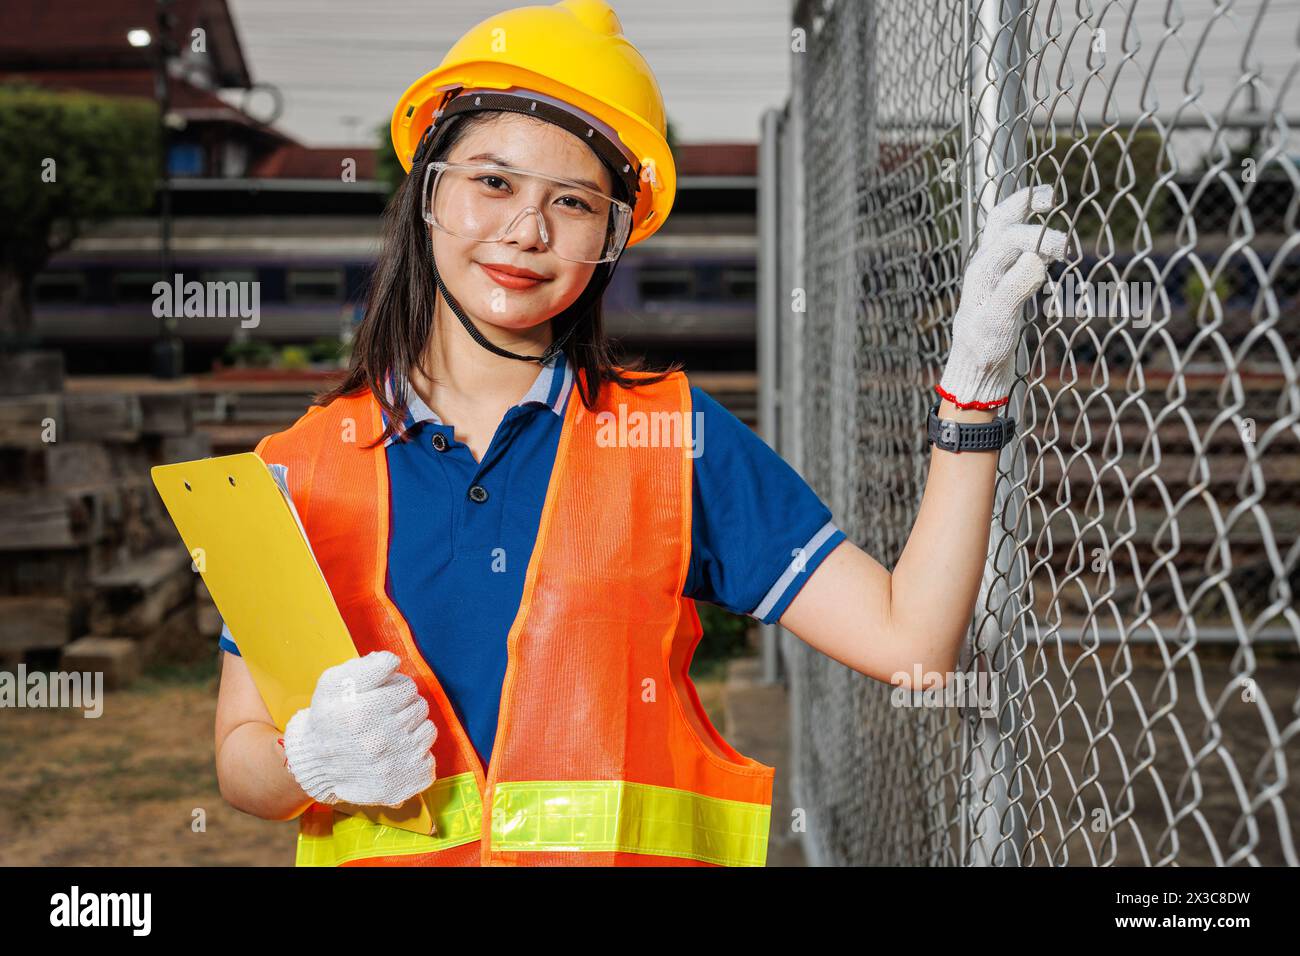 ritratti giovani lavoratrici in piedi sorriso felice con elmetto di sicurezza. donna intelligente che lavora nell'industria. Foto Stock